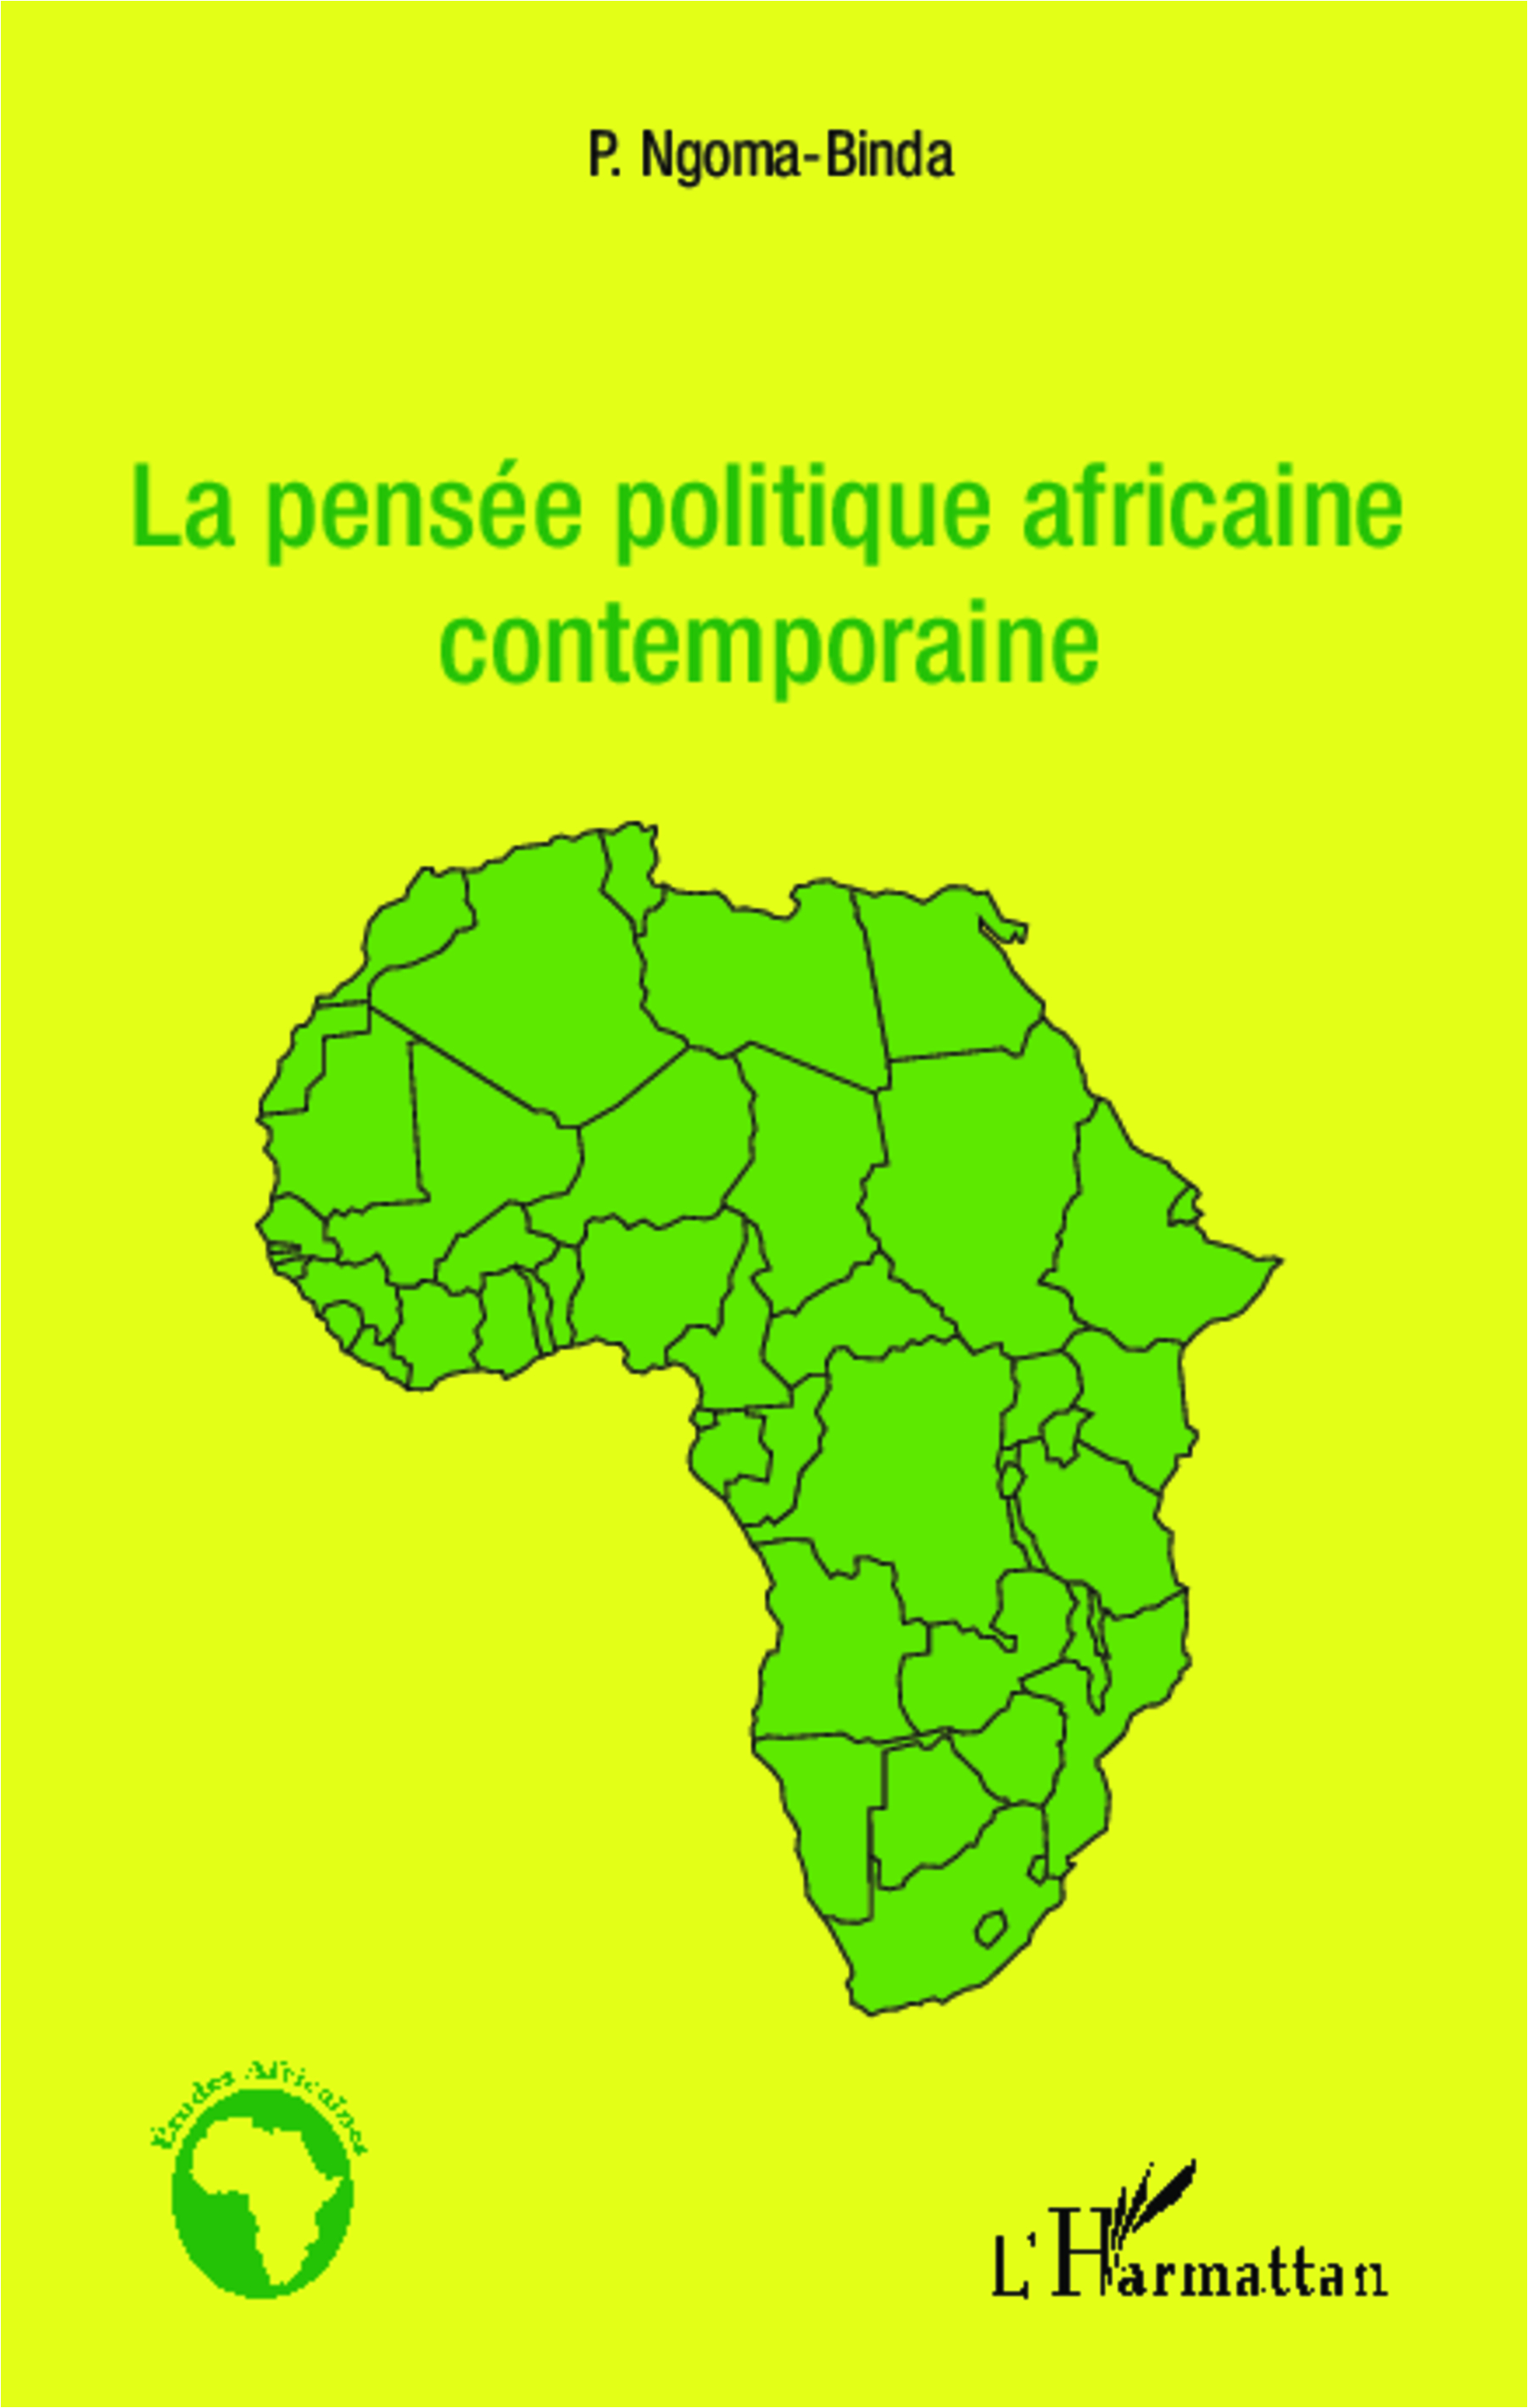  La couverture de La Pensée politique africaine contemporaine